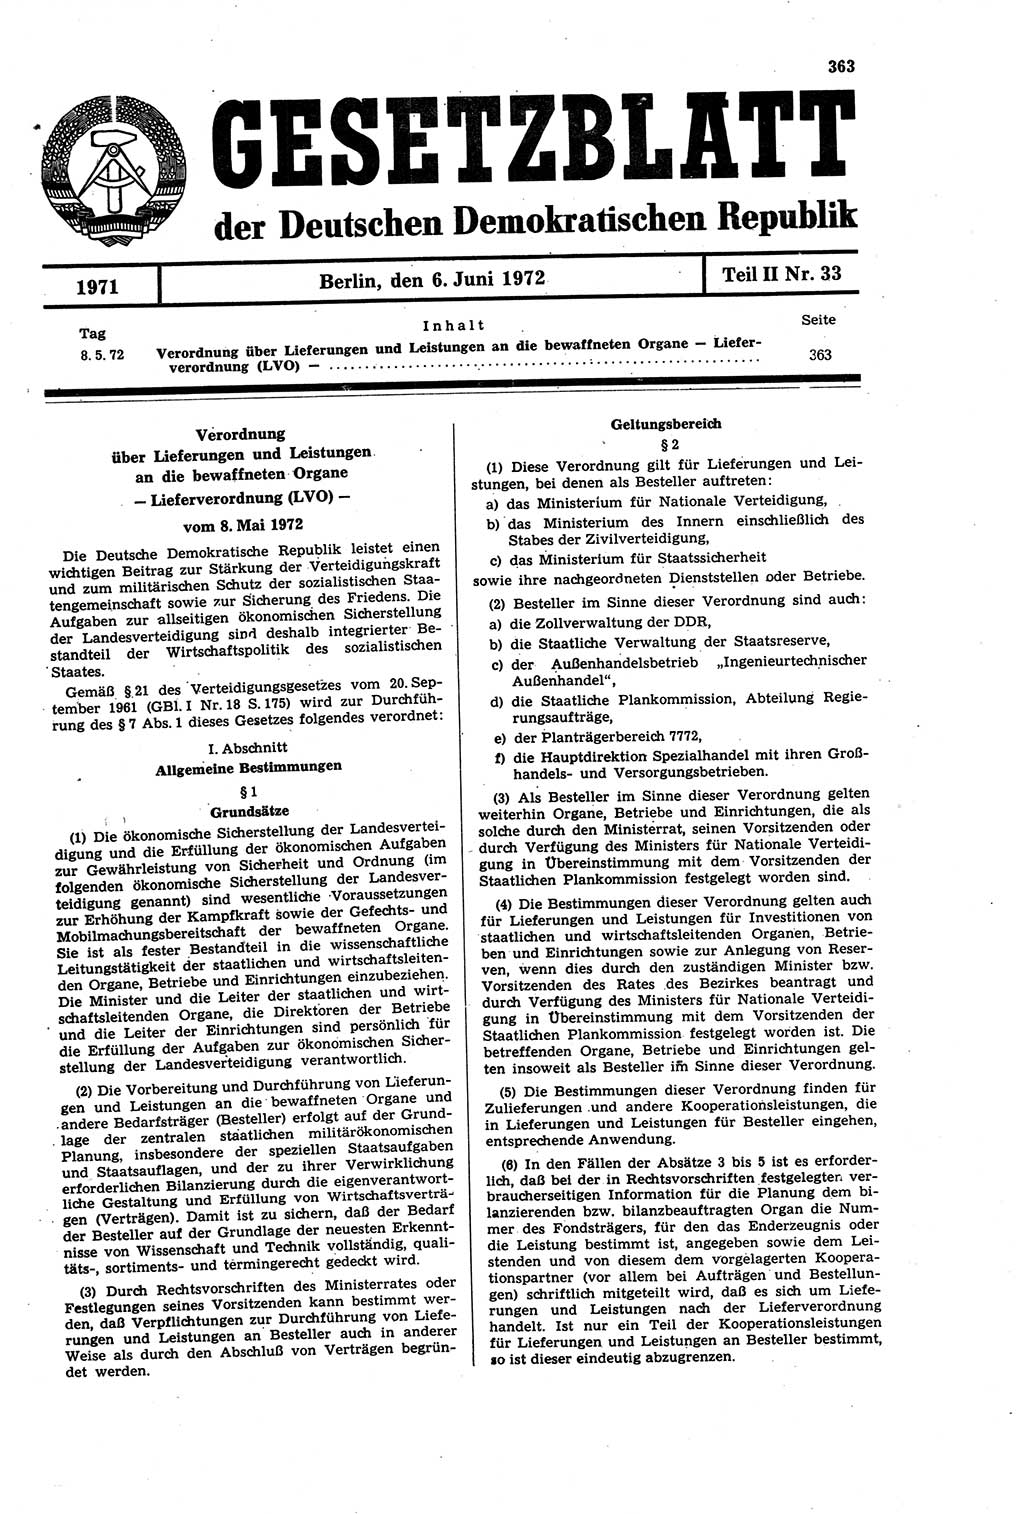 Gesetzblatt (GBl.) der Deutschen Demokratischen Republik (DDR) Teil ⅠⅠ 1972, Seite 363 (GBl. DDR ⅠⅠ 1972, S. 363)